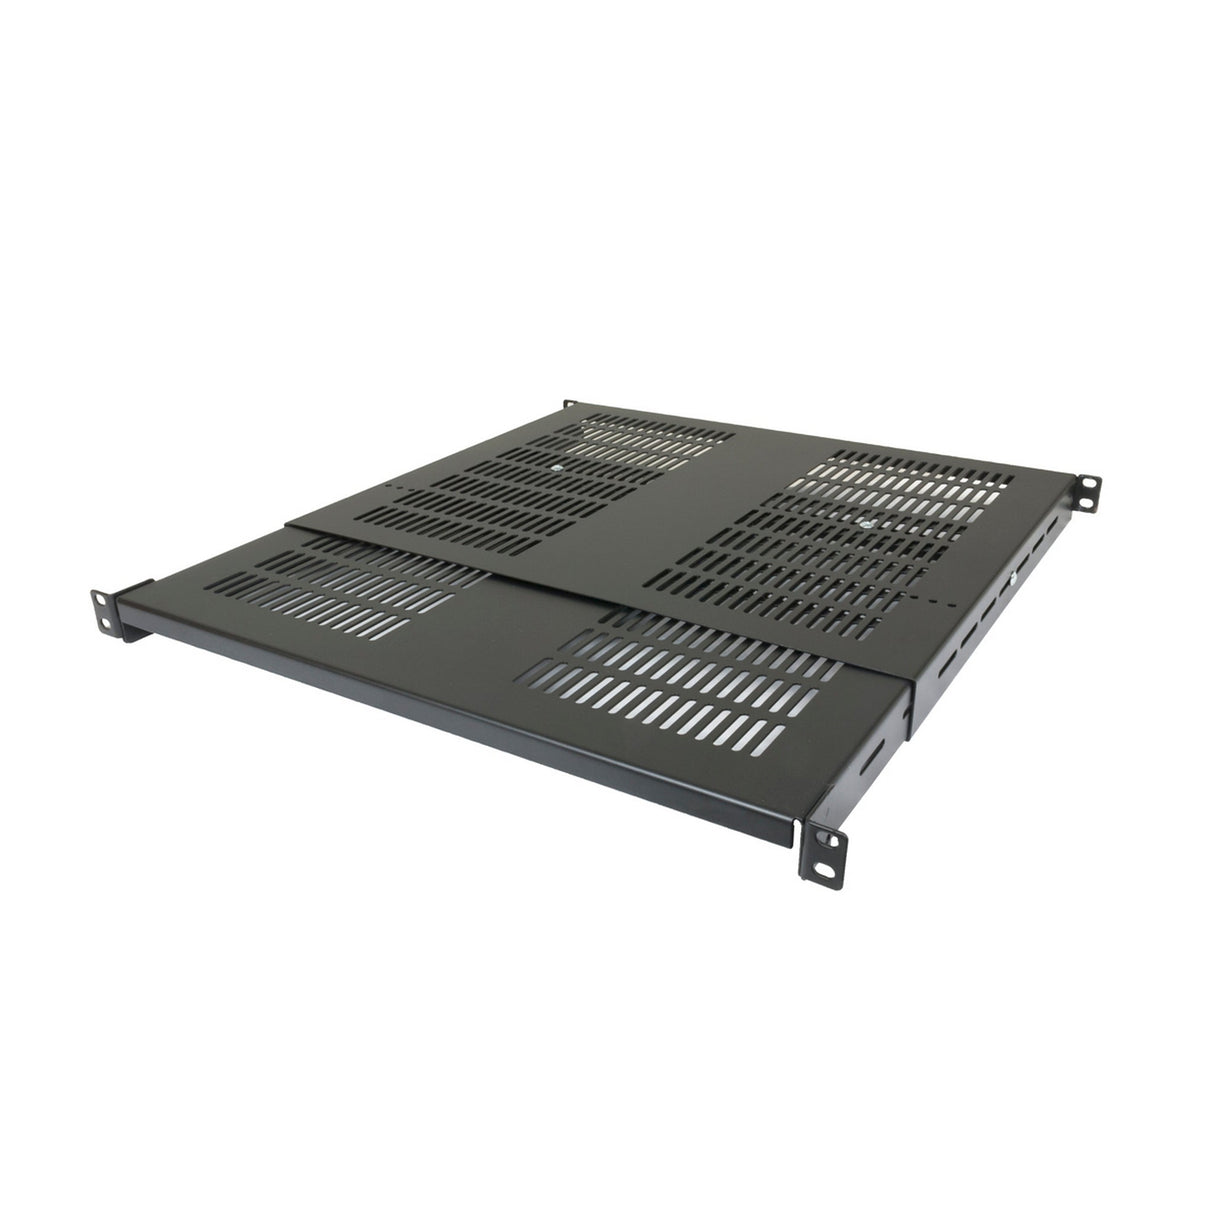 Lowell VDS Rack Shelf with Adjustable Depth